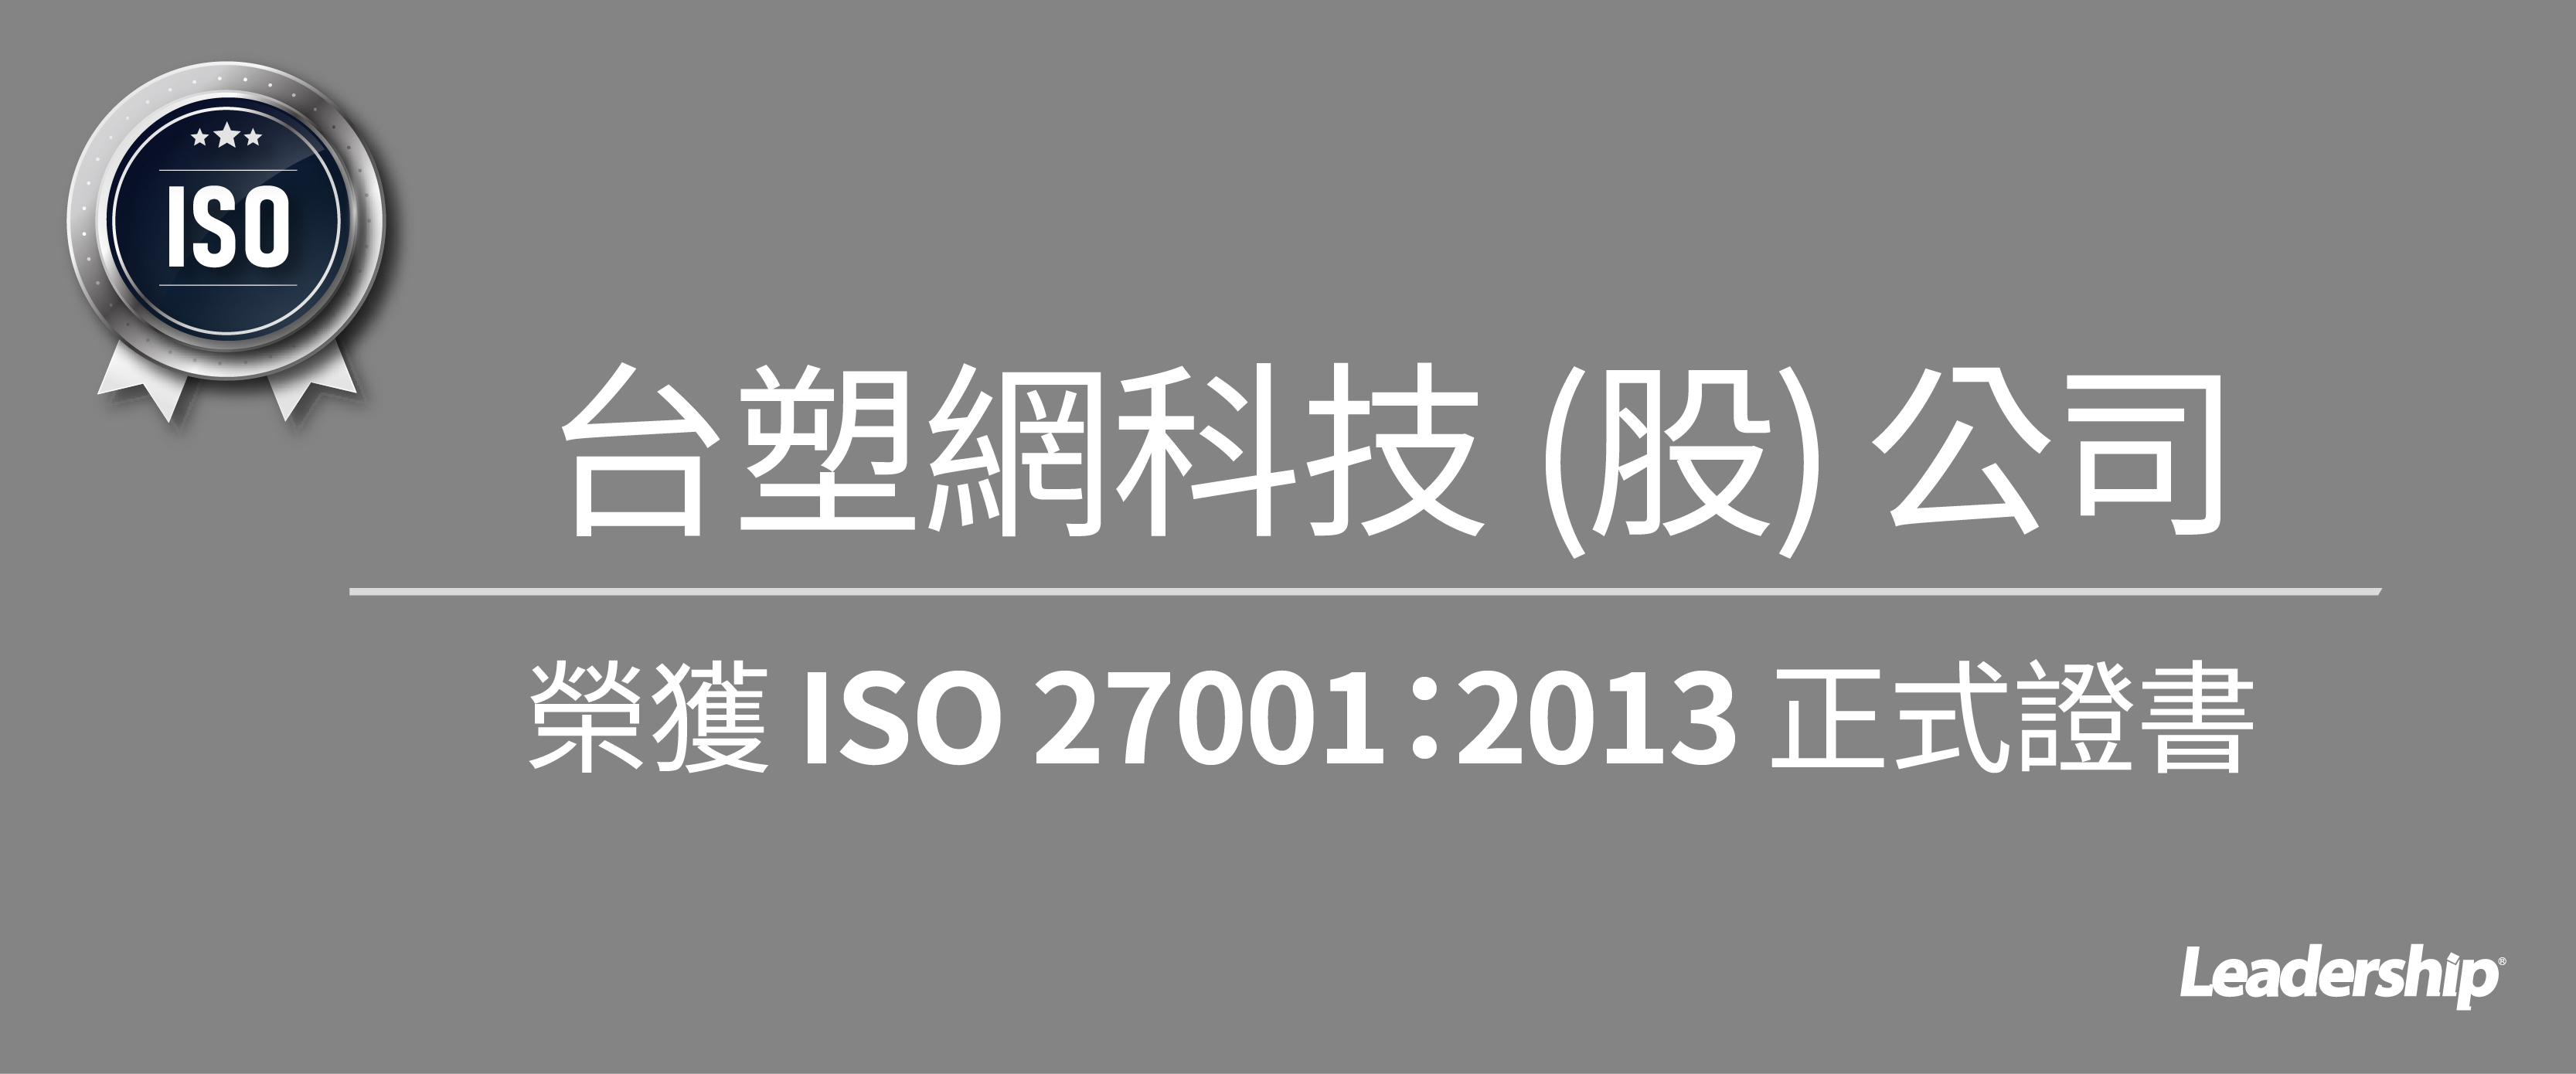 台塑網科技 (股) 榮獲 ISO 27001：2013 正式證書